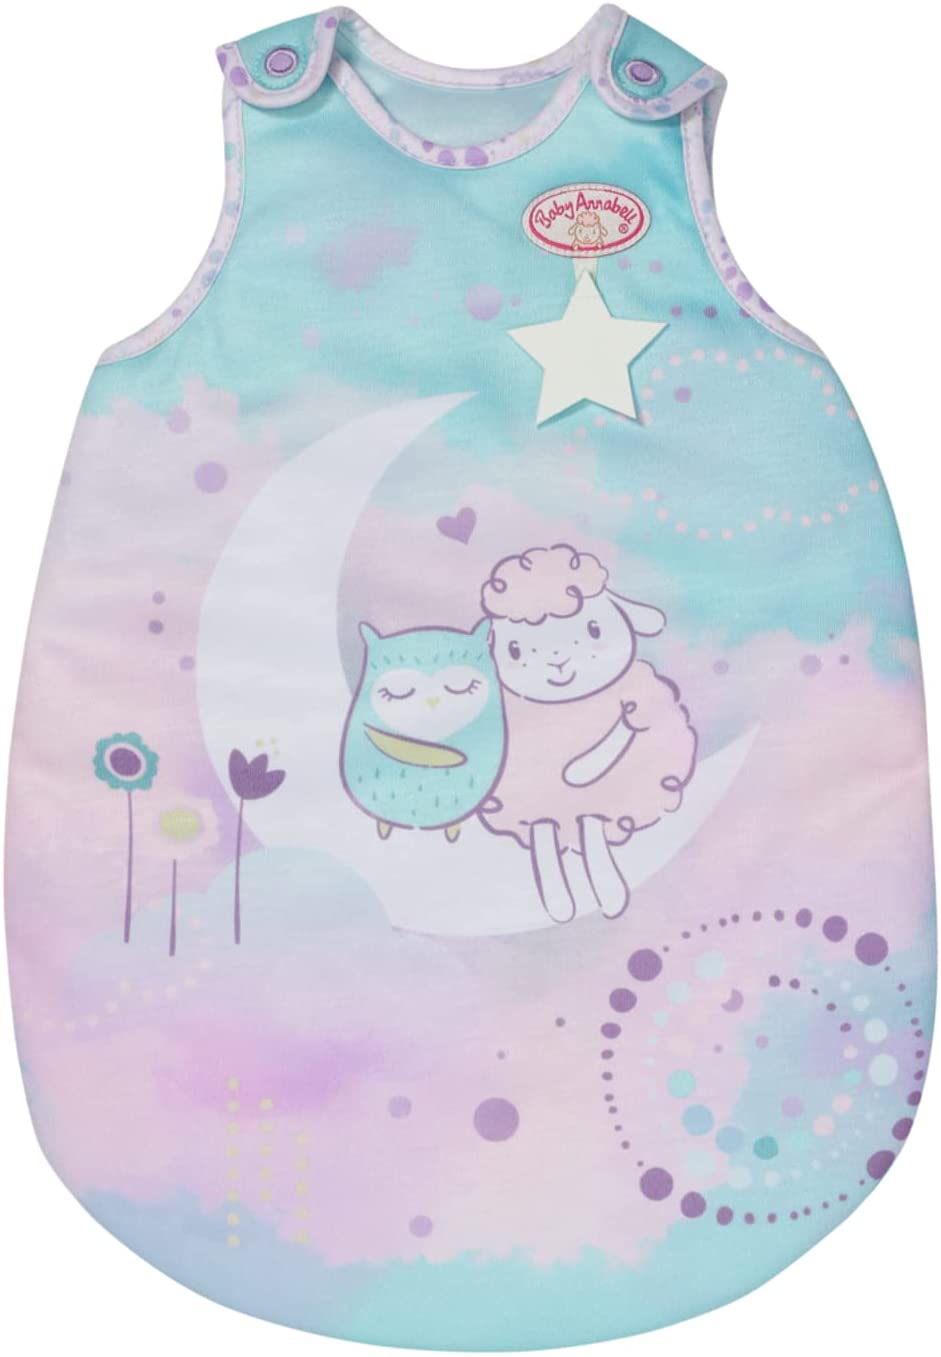 Baby Annabell Sweet Dreams Schlafsack – passend für Baby Annabell Puppen bis 43 cm